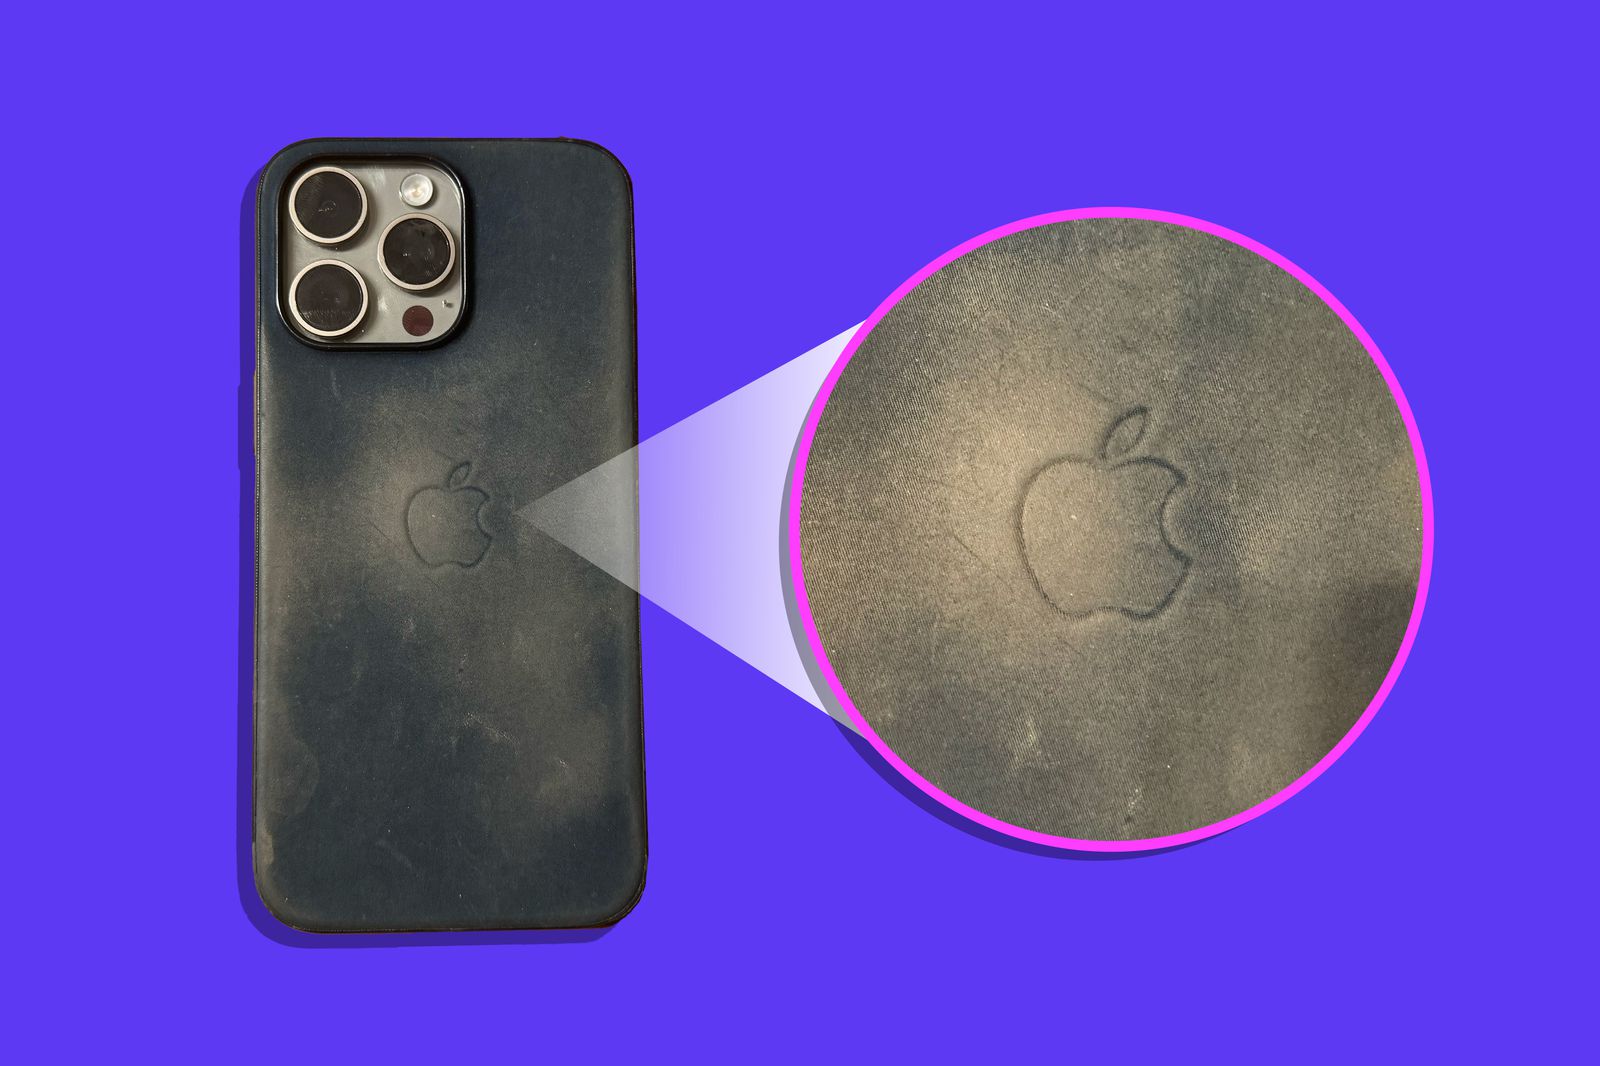 W wiadomościach z tygodnia od 12 do 18 kwietnia na iPhoneIslam.com pojawił się smartfon z trzema aparatami, pokazujący w powiększeniu logo zakurzonego jabłka na fioletowym tle.